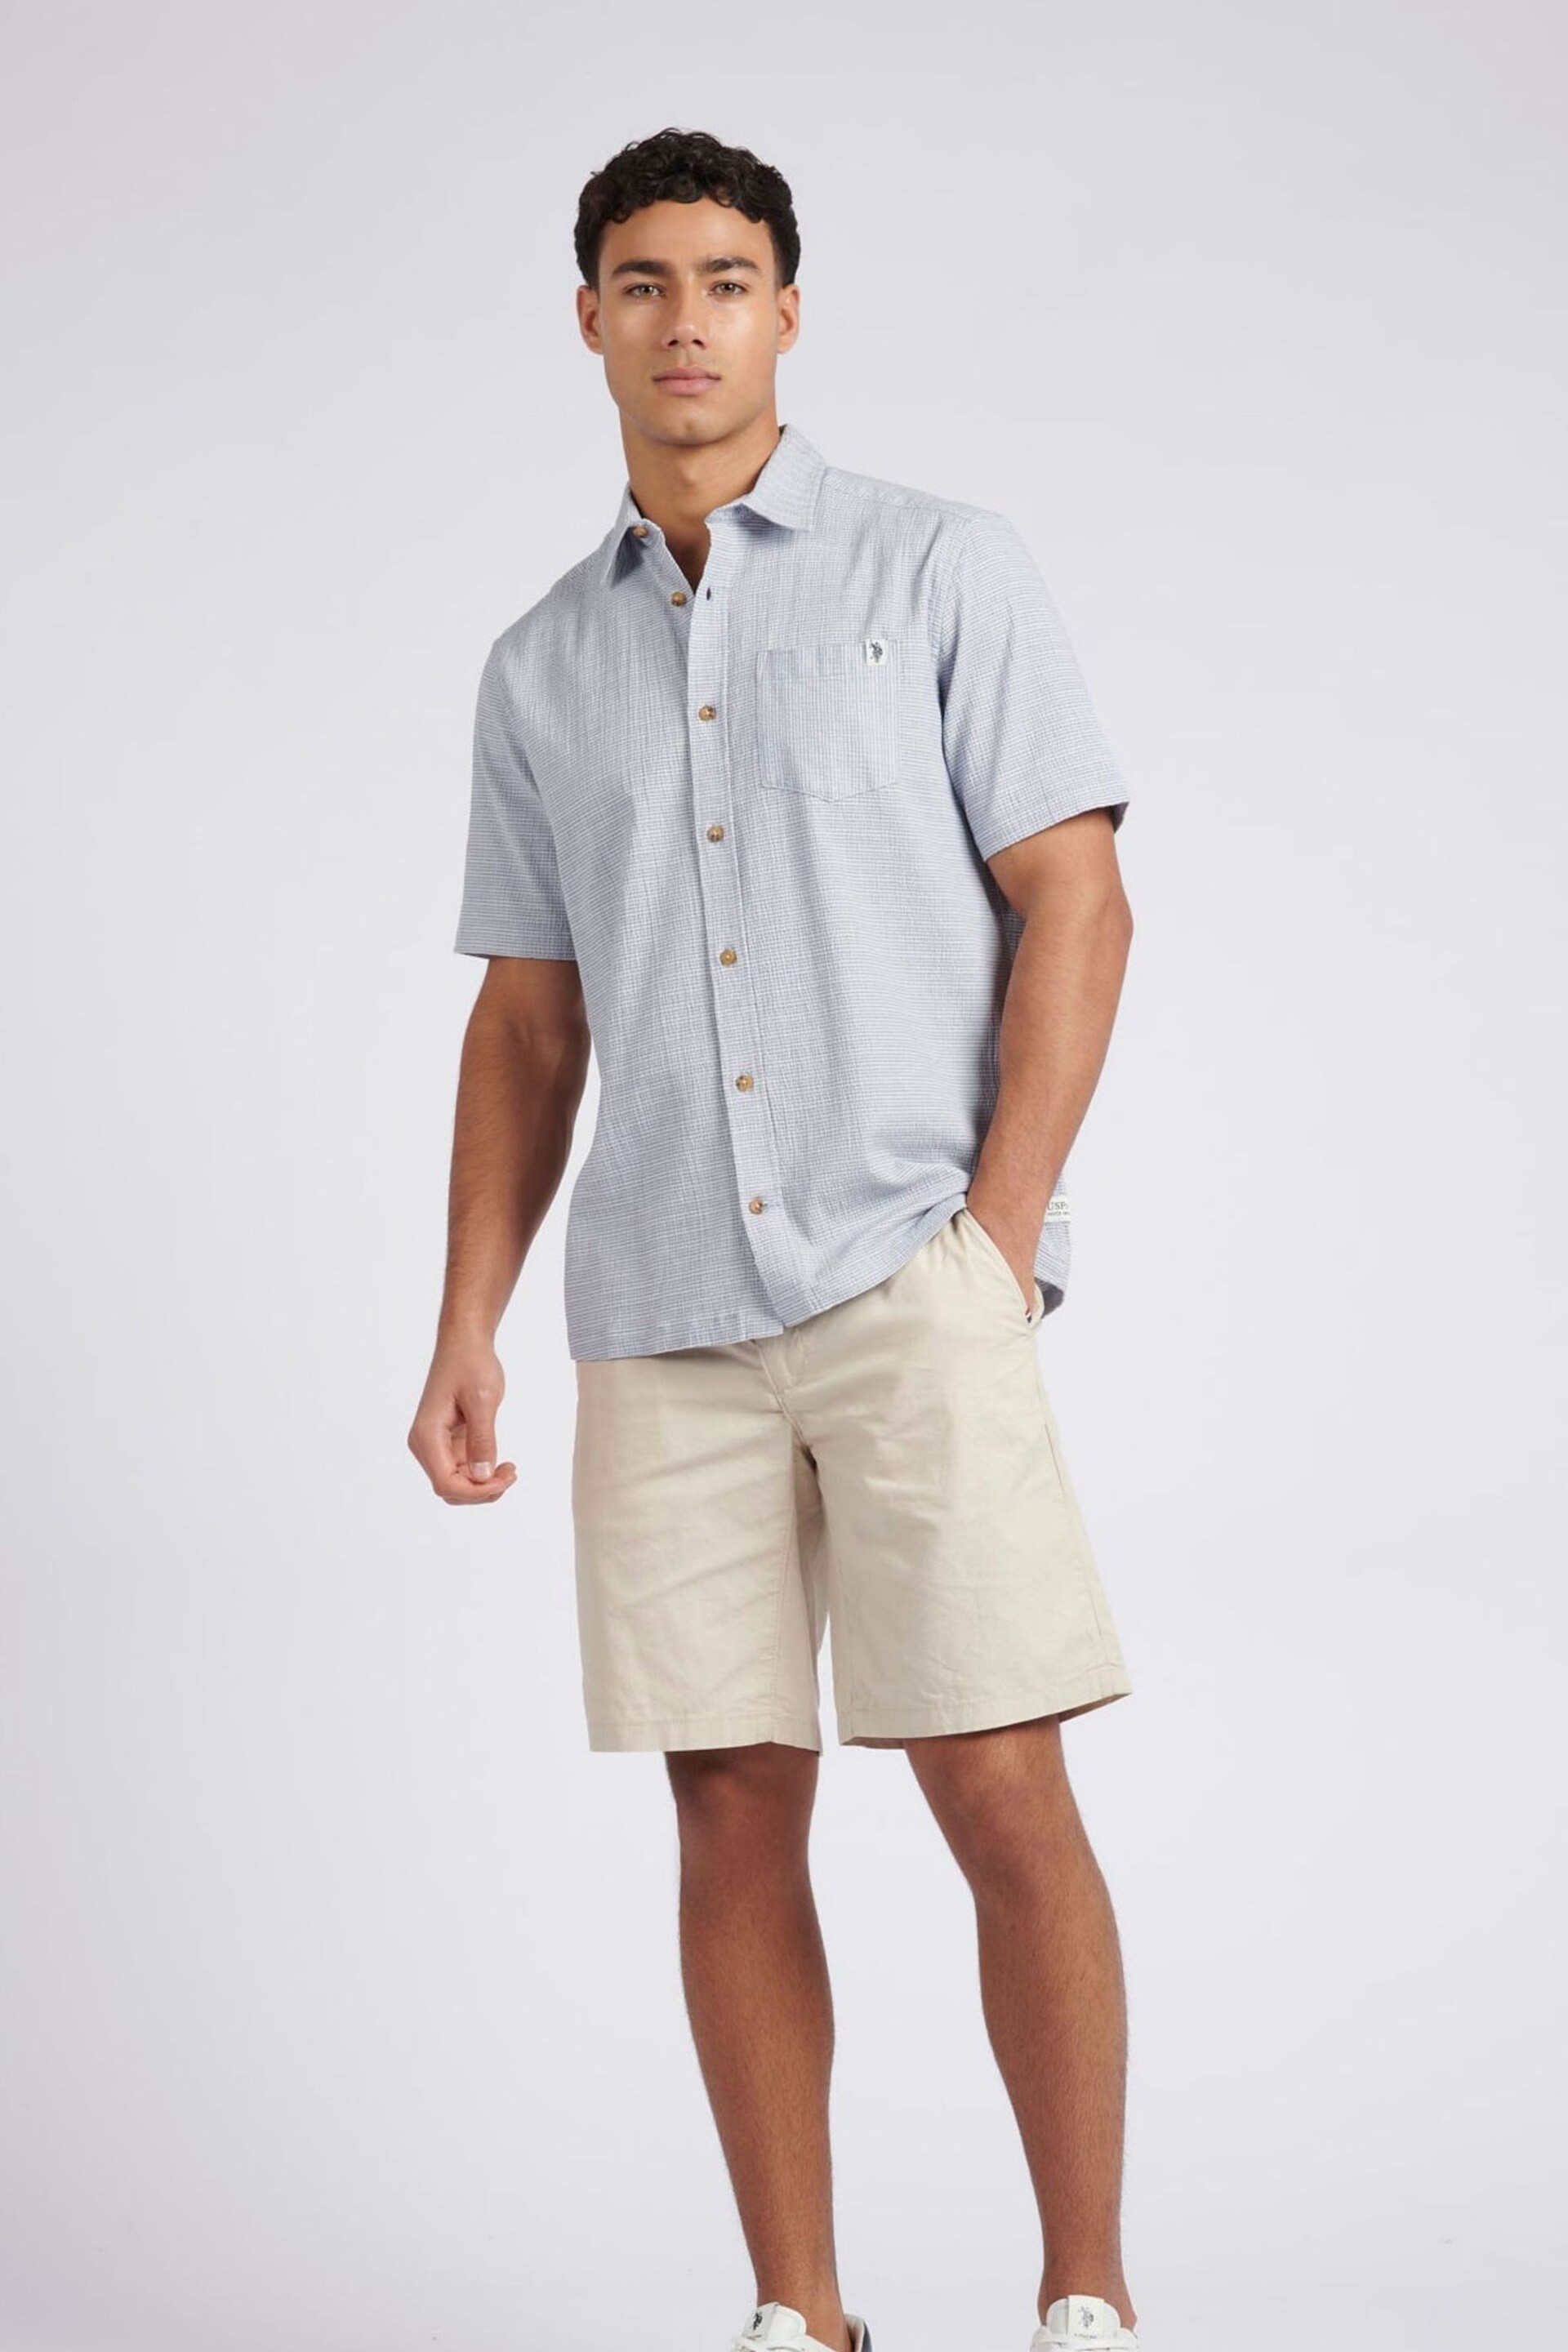 U.S. Polo Assn. Mens Blue Seersucker Stripe Short Sleeve Shirt - Image 3 of 9